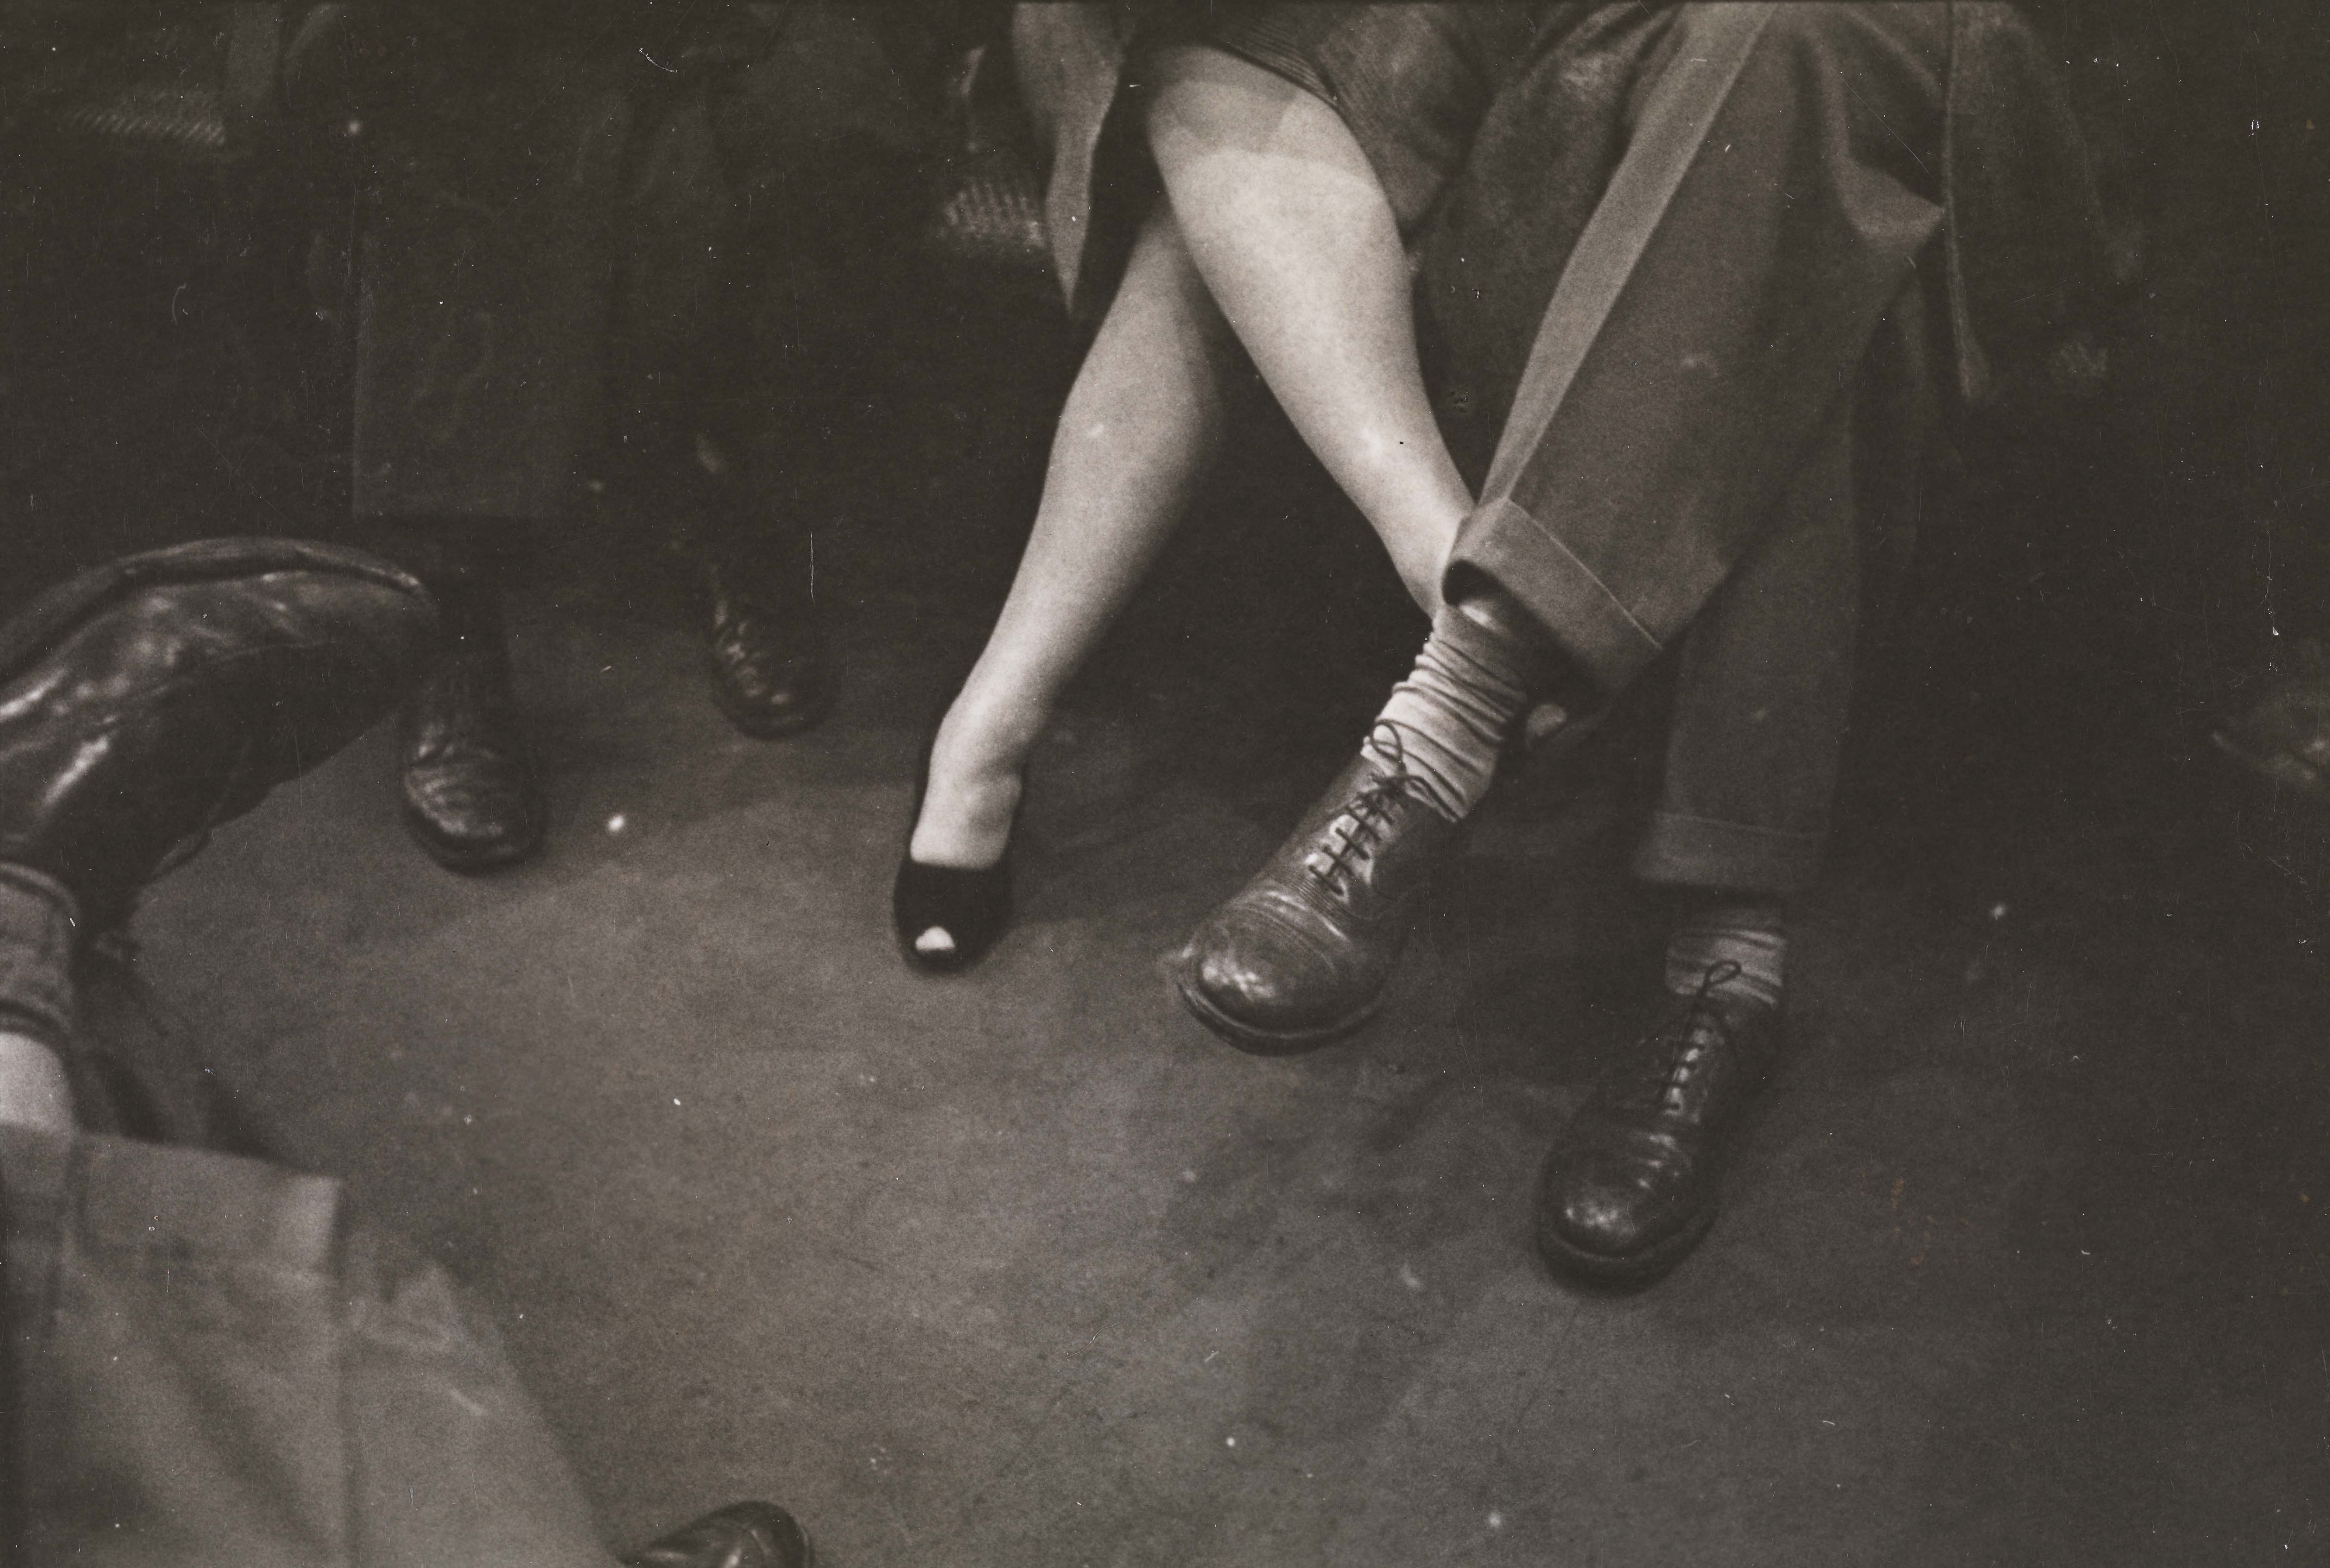 スタンリー・キューブリック。 ニューヨーク市地下鉄の生活と愛。 地下鉄で足で遊ぶカップル。 1946.ニューヨーク市立博物館。 X2011.4.10292.90E